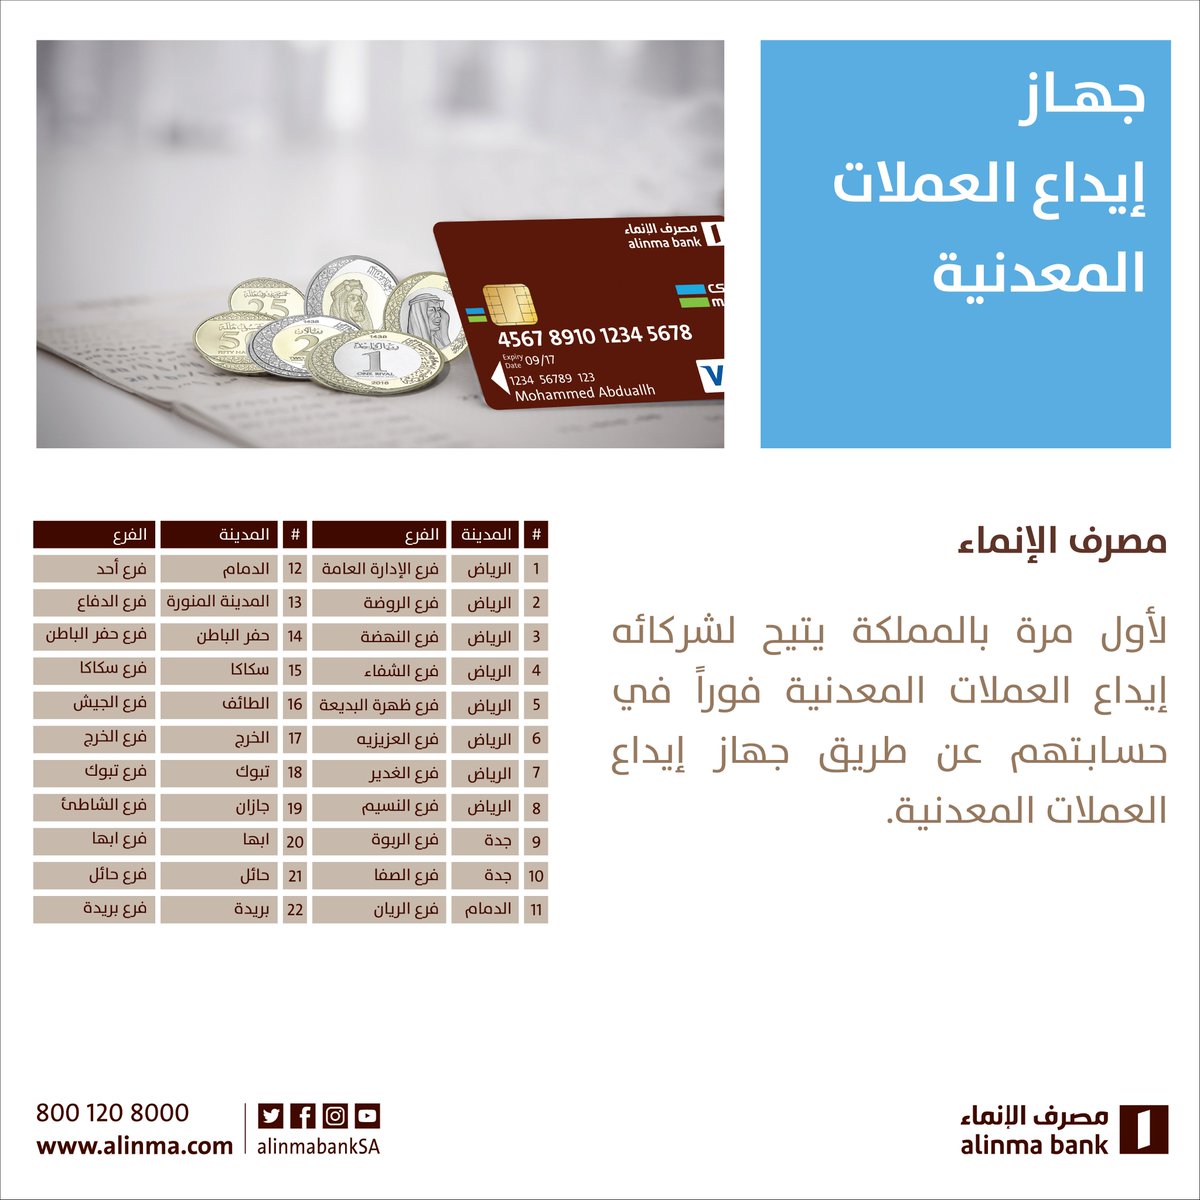 مصرف الإنماء On Twitter مصرف الإنماء أول مصرف في المملكة العربية السعودية يوفر جهاز إيداع العملات المعدنية في فروع مختارة